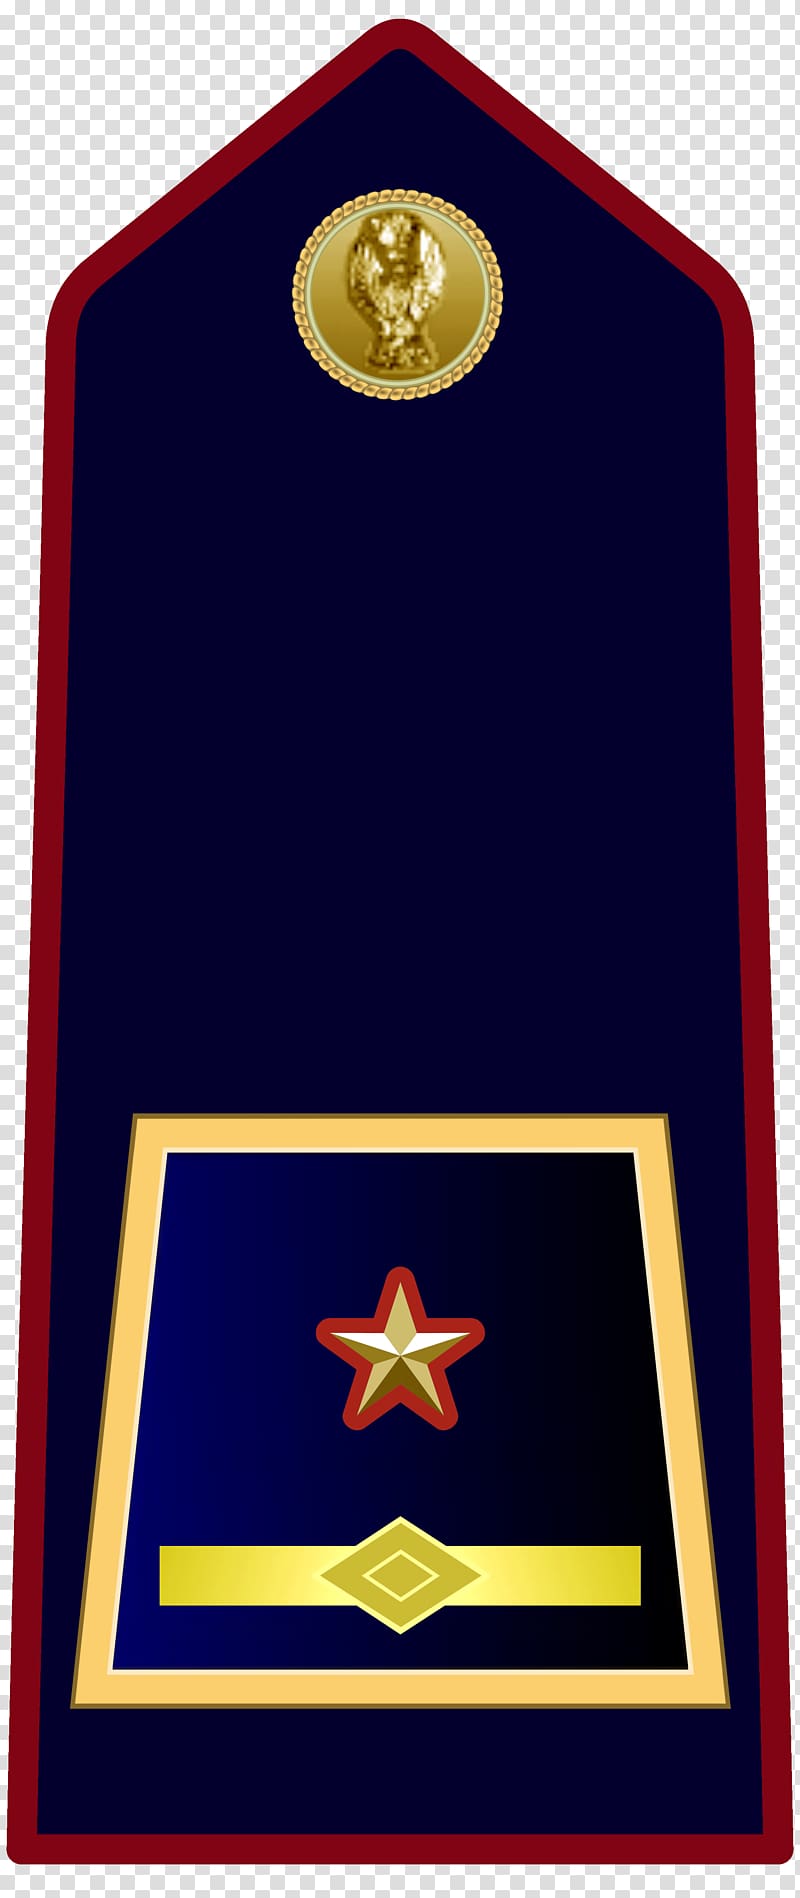 Military rank Ispettore superiore Sostituto commissario Qualifiche della Polizia di Stato, others transparent background PNG clipart